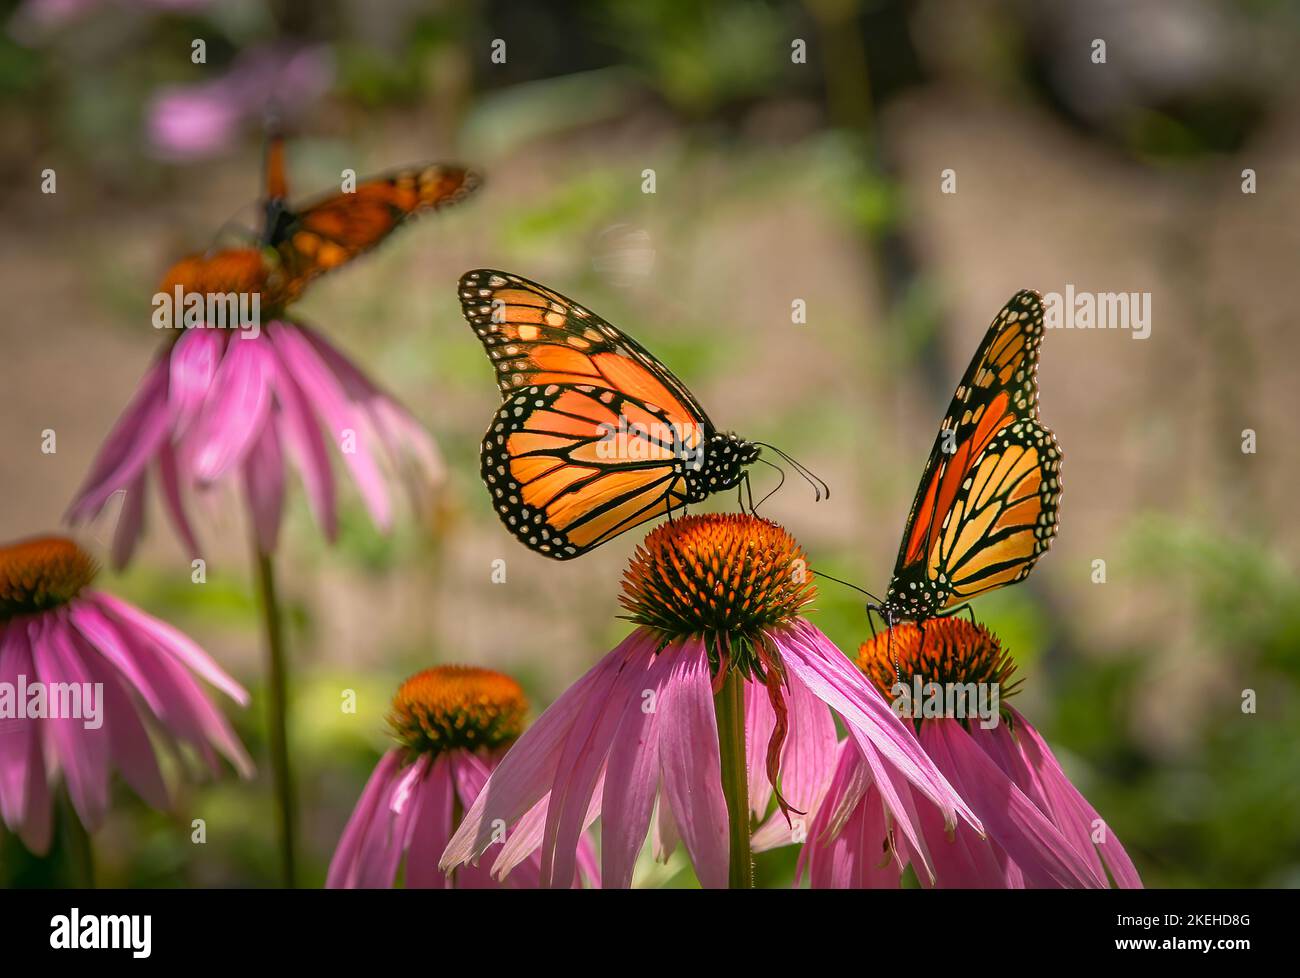 Papillons monarques (Danaus plexippus) également connu sous le nom de papillon Wanderer sur un Coneflowers (Echinacea purpurea) Banque D'Images